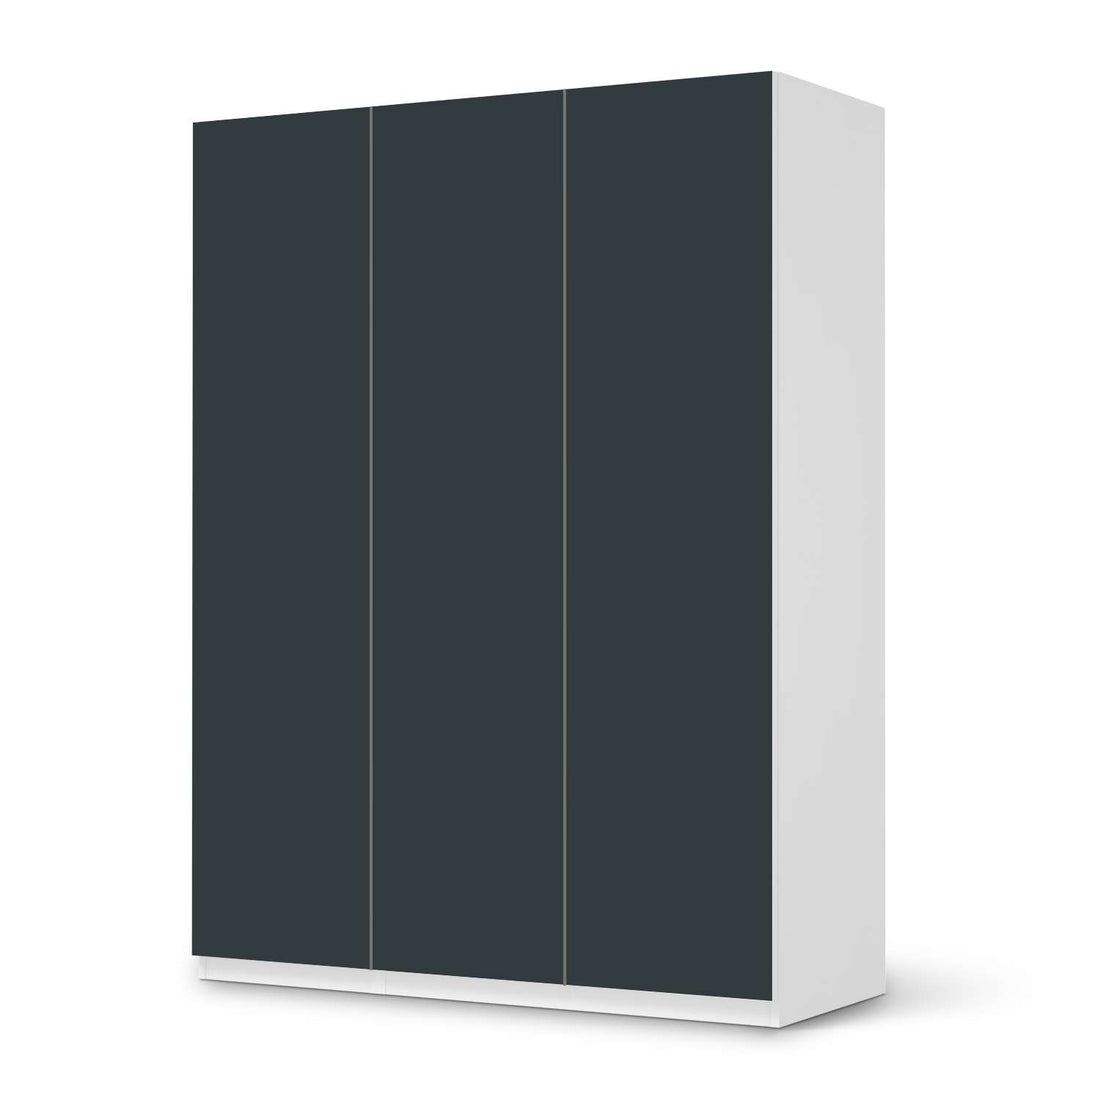 Folie für Möbel Blaugrau Dark - IKEA Pax Schrank 201 cm Höhe - 3 Türen - weiss